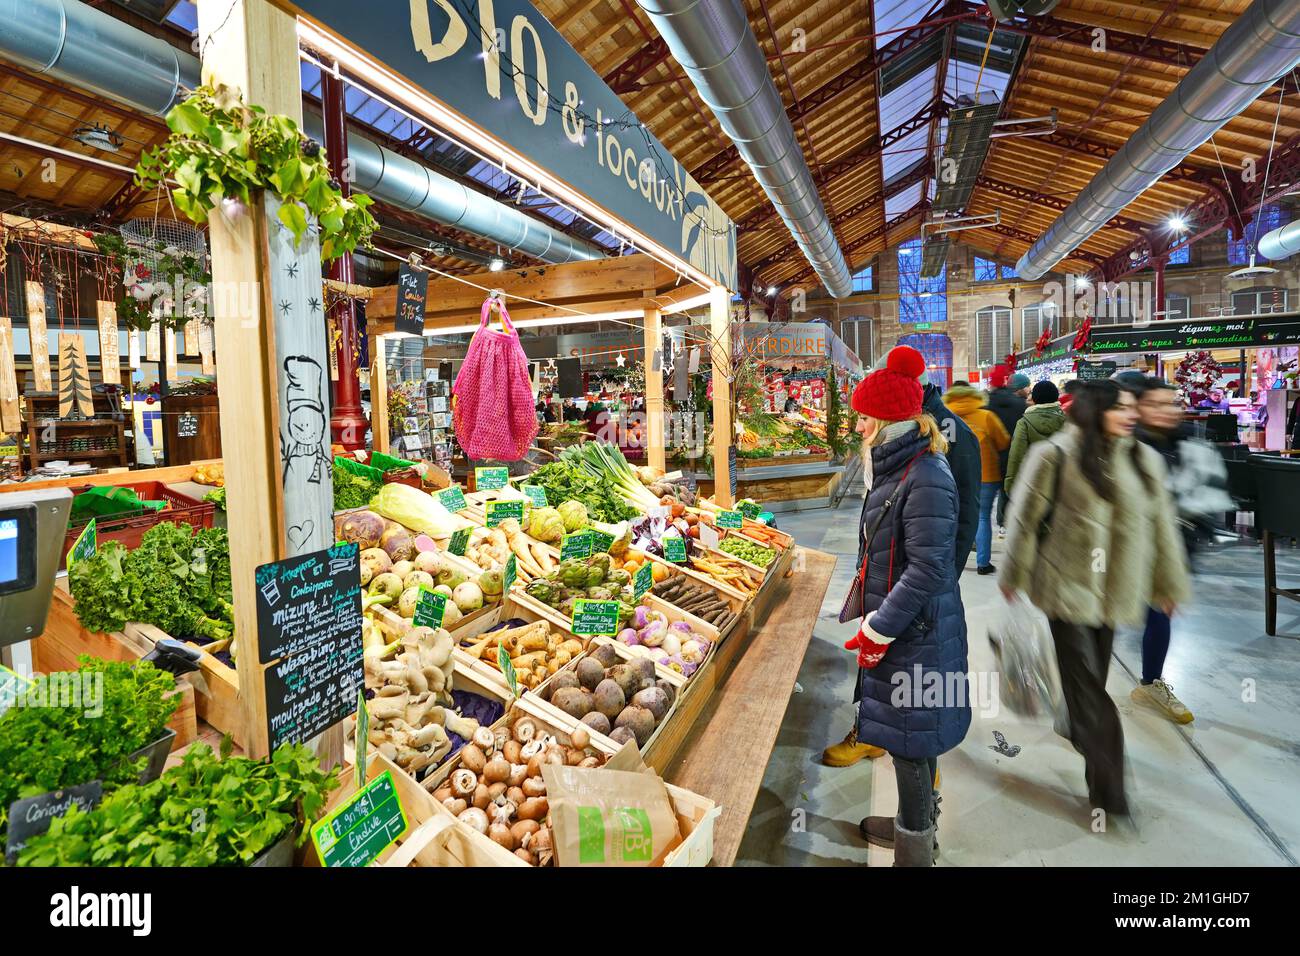 Le marché couvert de Colmar (le marché Couvert de Colmar) Colmar, France - décembre 2022 Banque D'Images